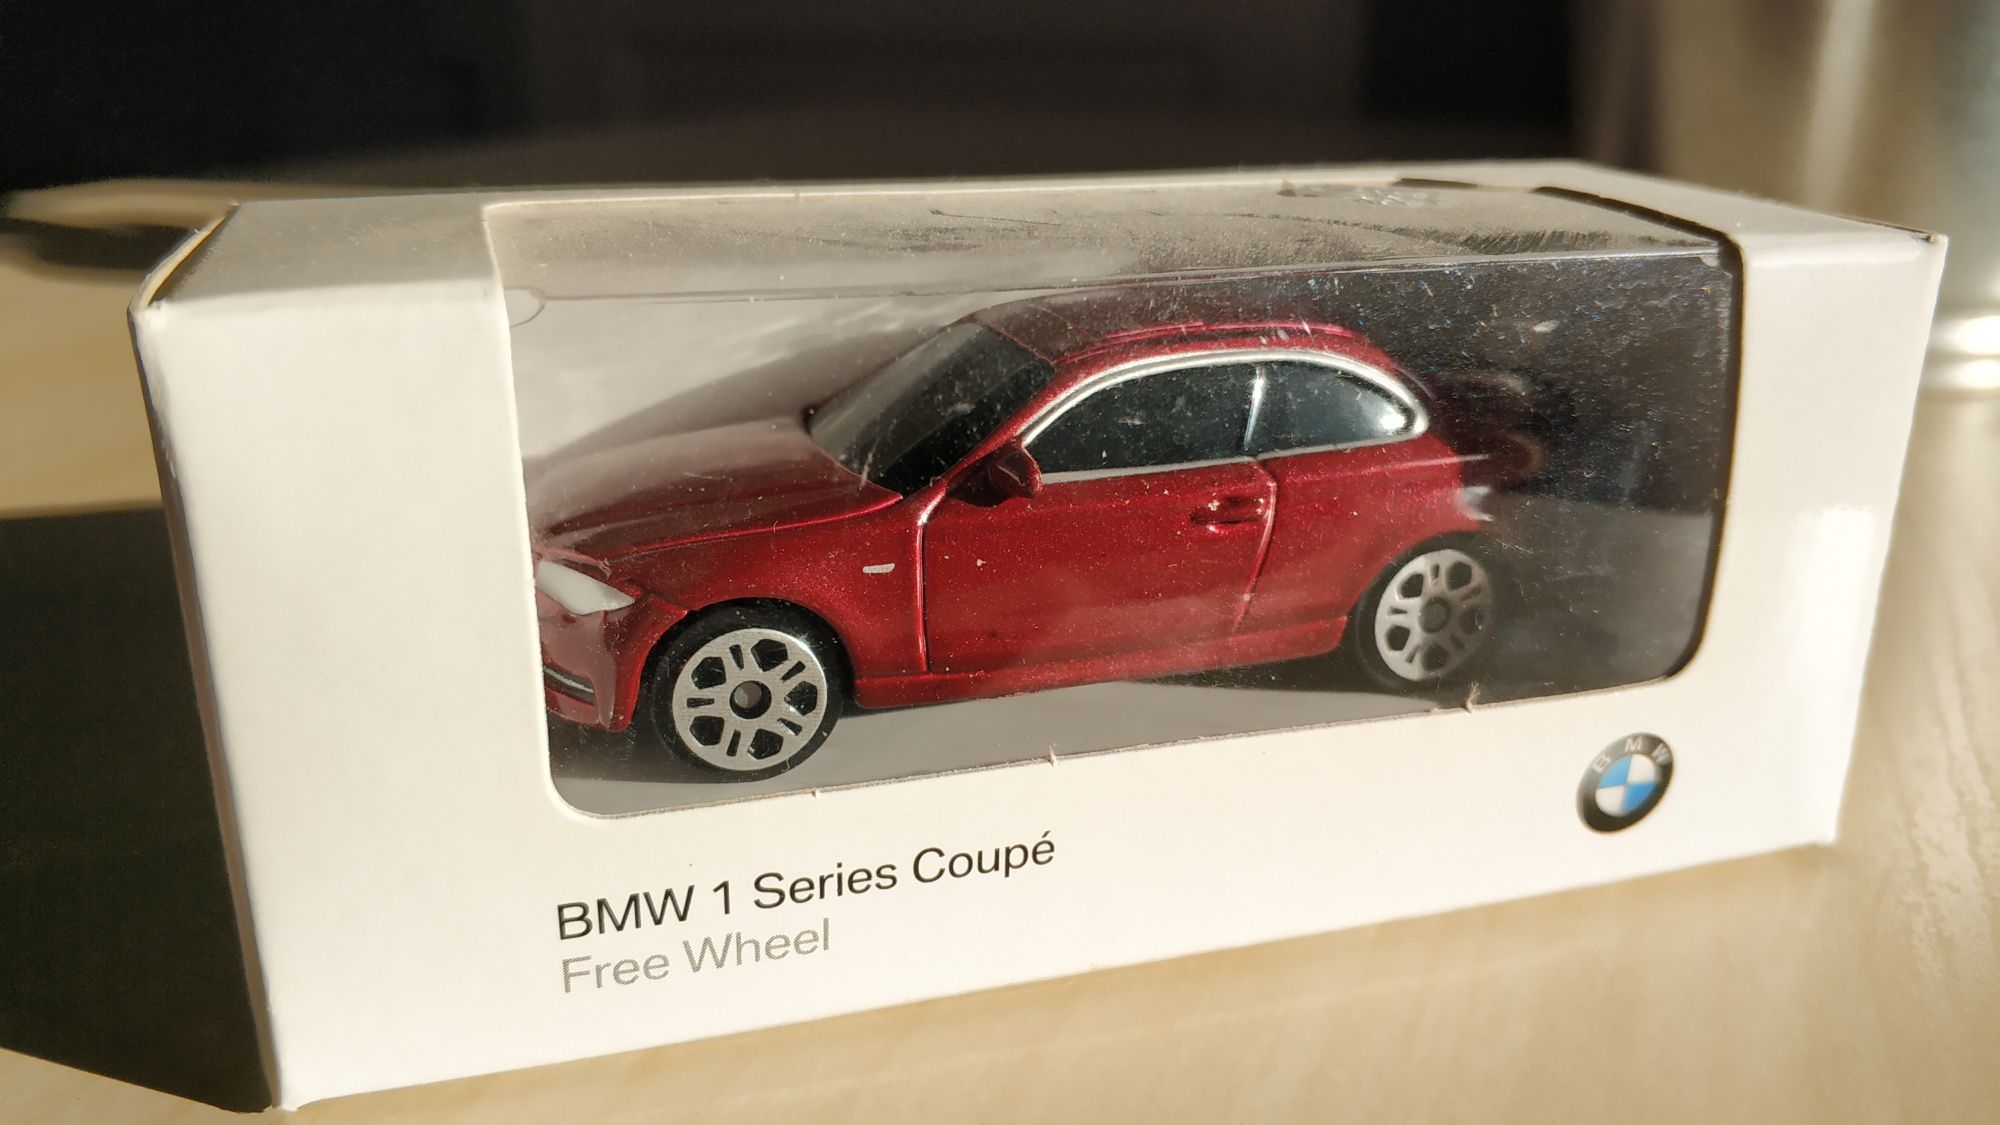 Diversos Carros de Colecção: BMW, VW, Kawasaki